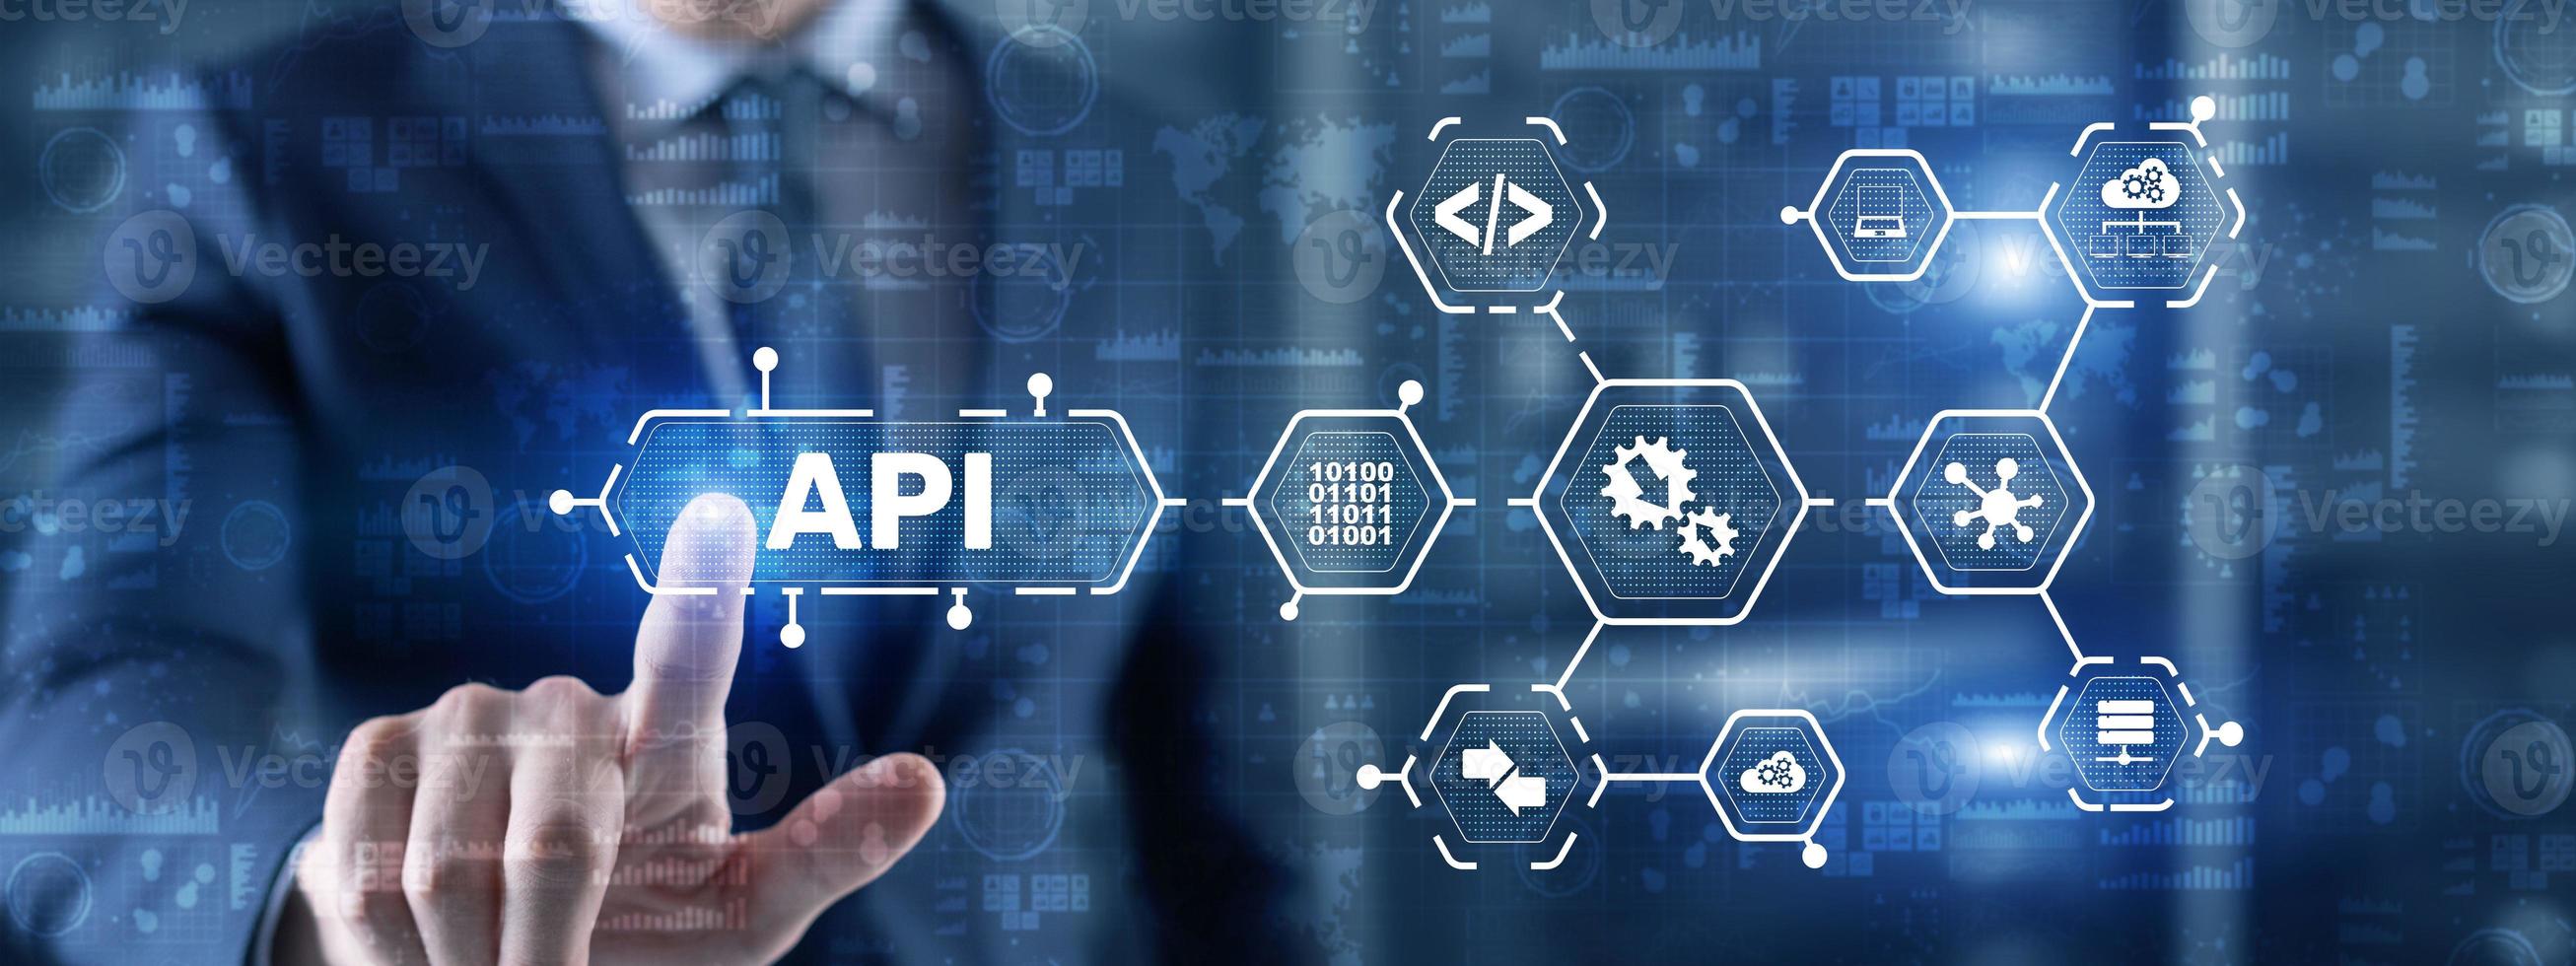 interface de programação de aplicativos. ferramenta de desenvolvimento de software API. conceito de tecnologia da informação. empresário pressiona ícone de texto API em uma interface virtual foto